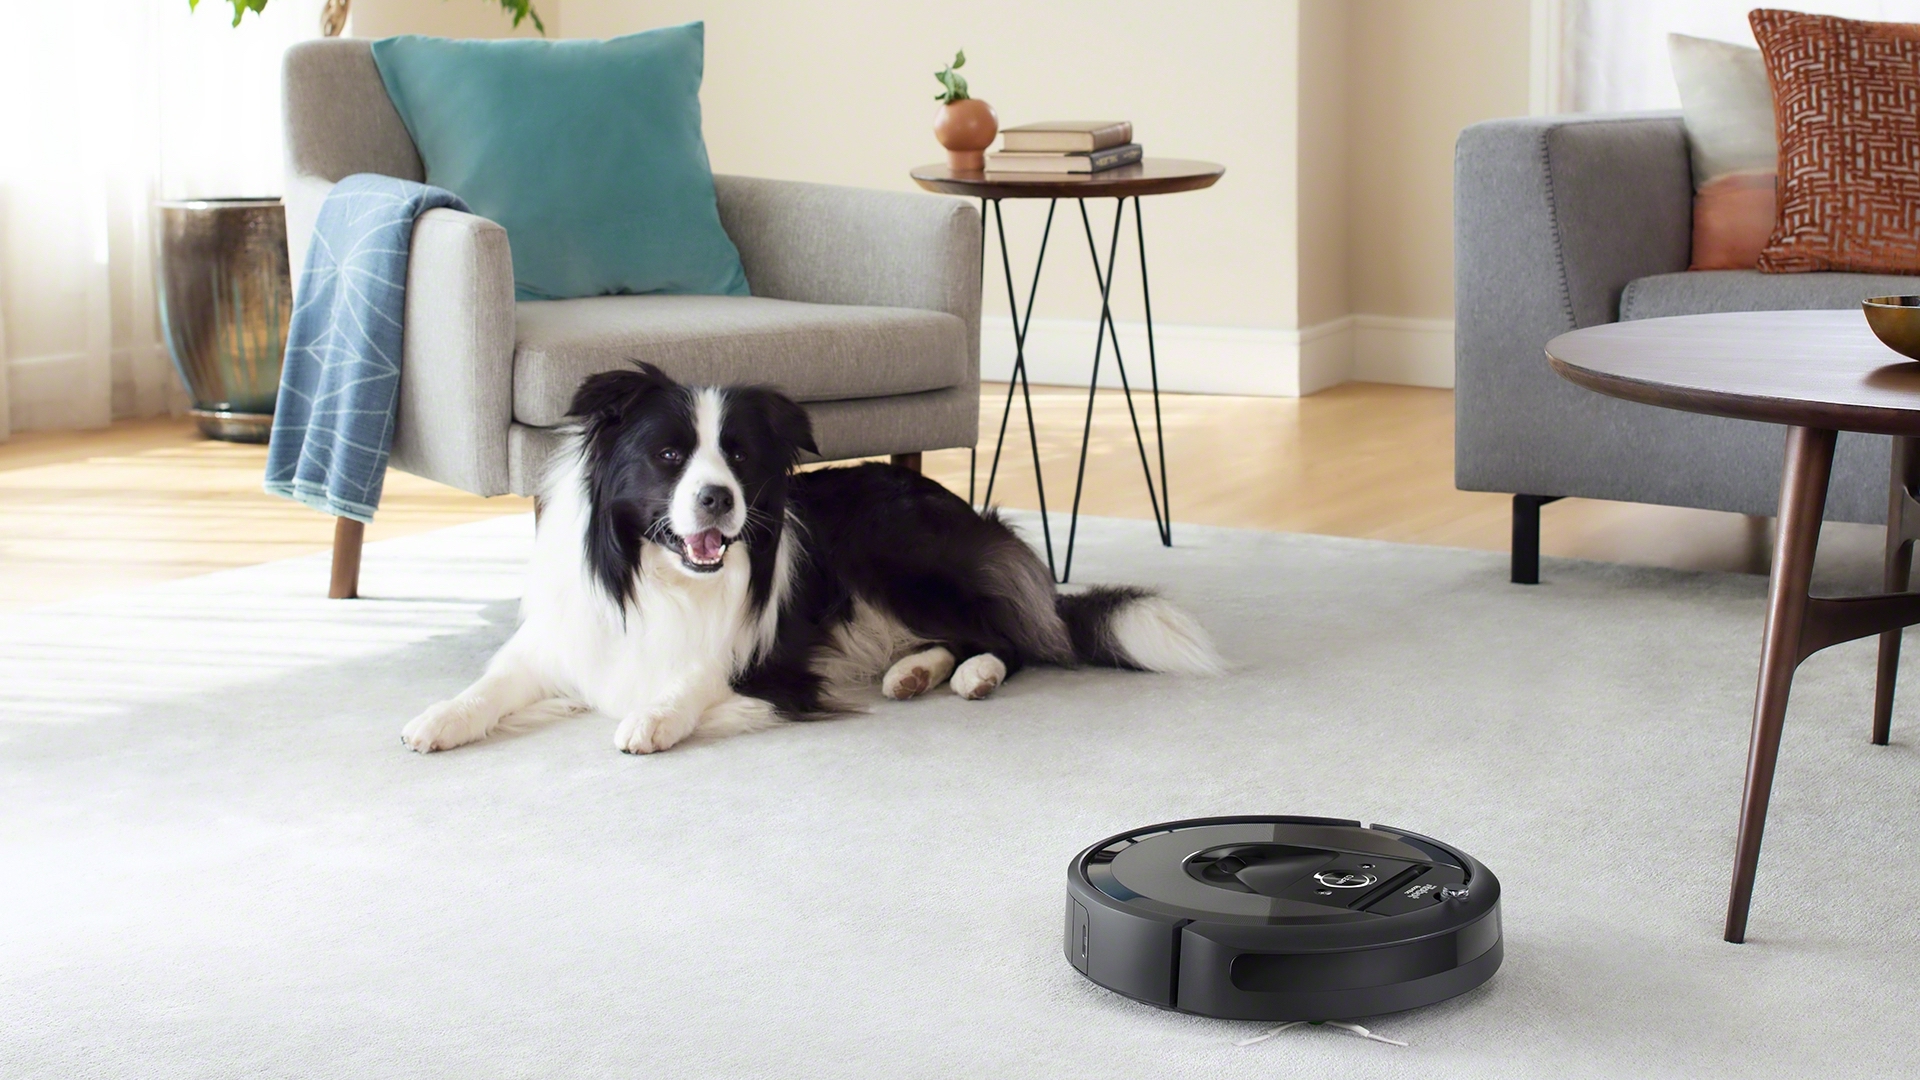 iRobot Roomba : i3+ vs i7+